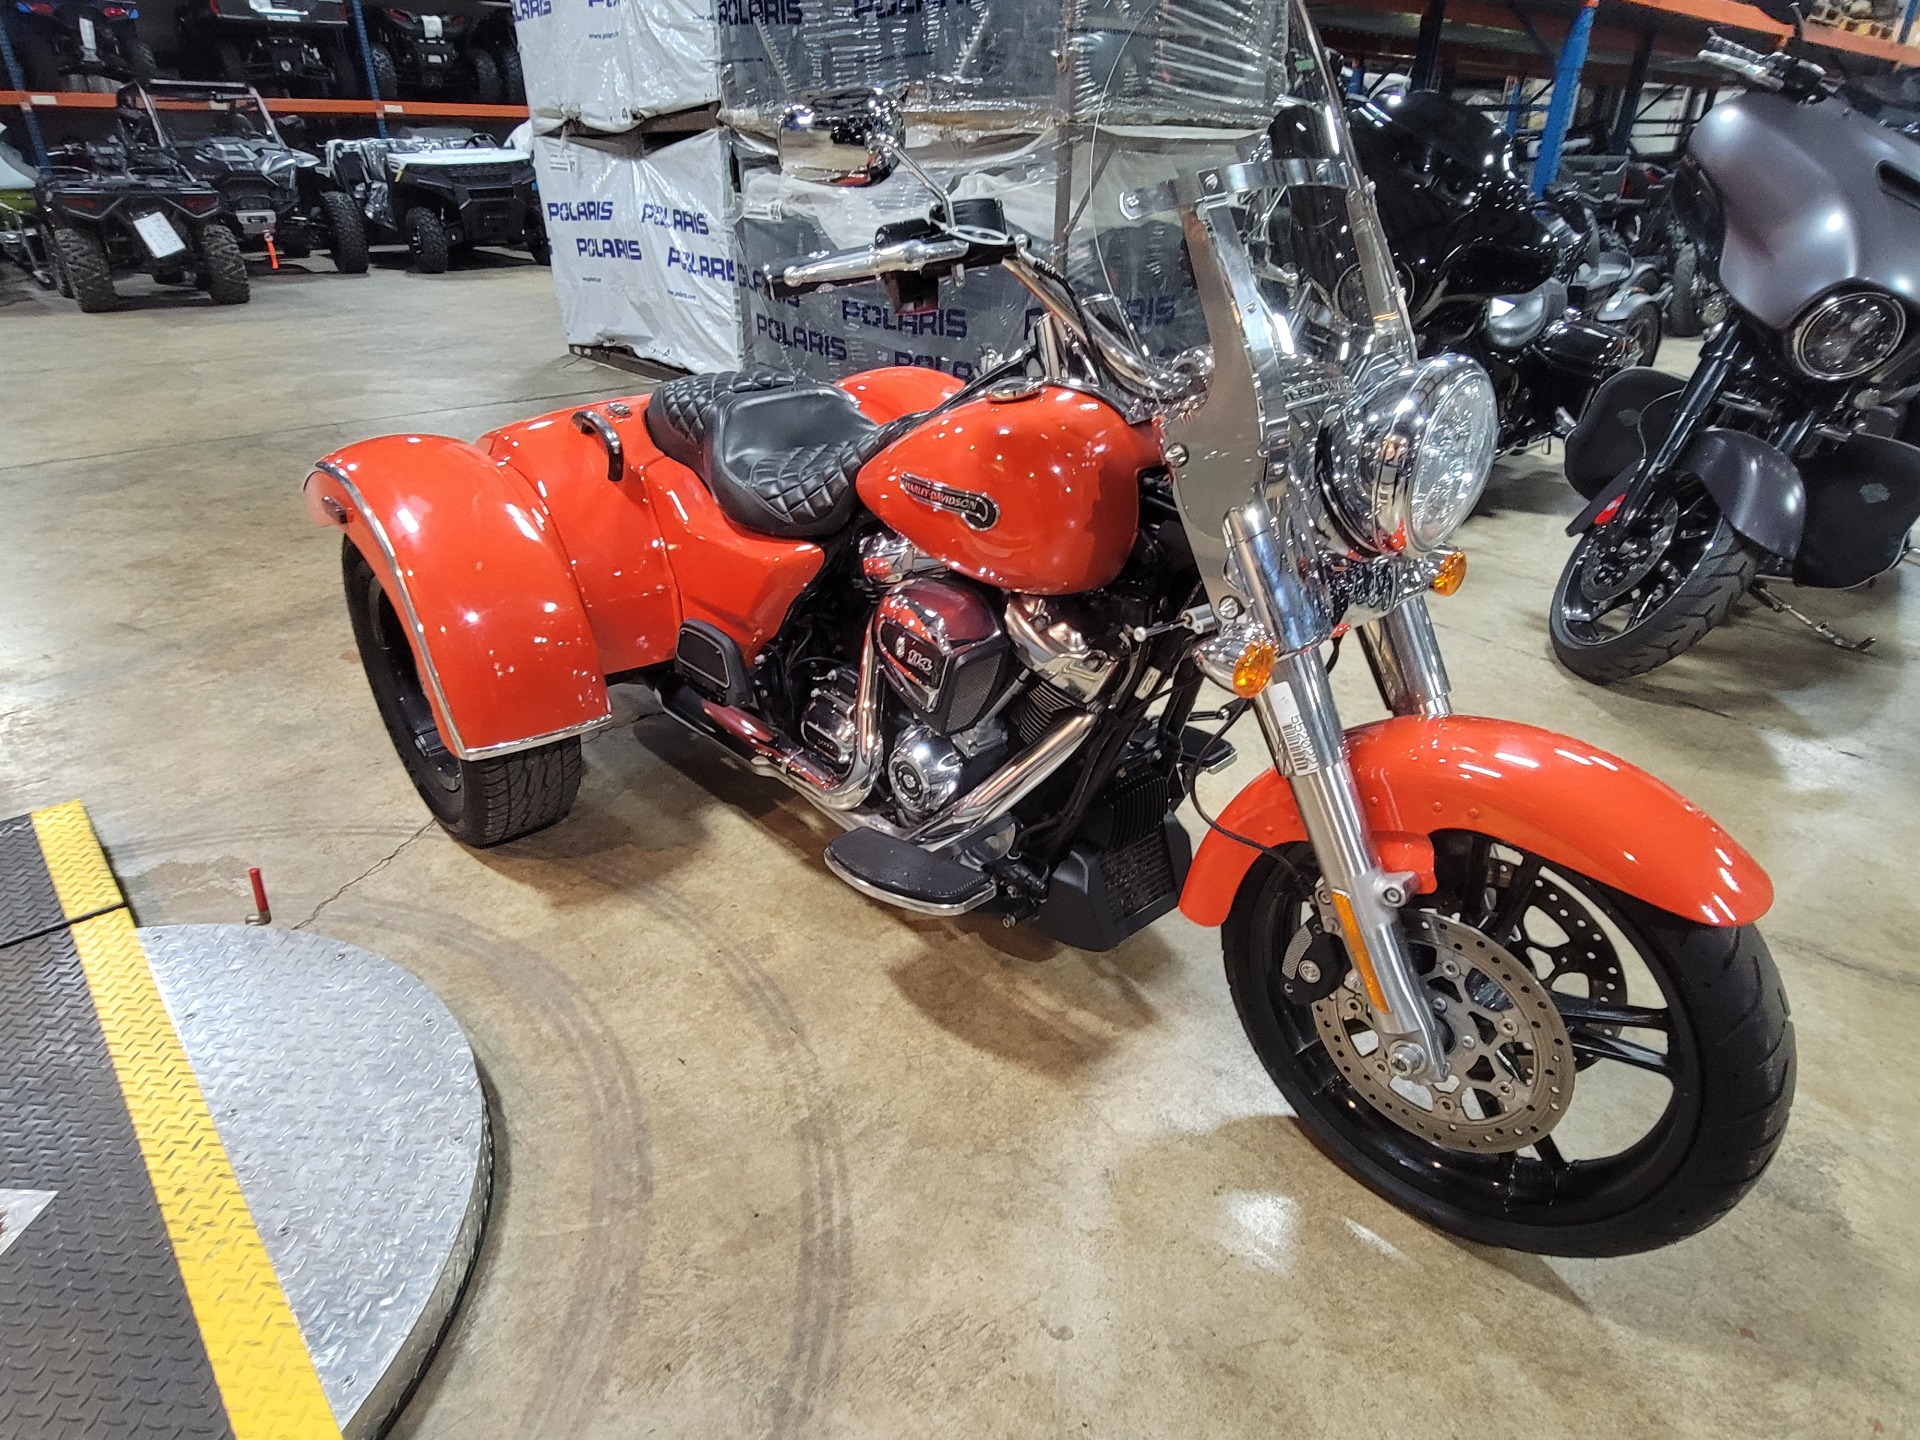 2020 Harley-Davidson Freewheeler® in Monroe, Michigan - Photo 4